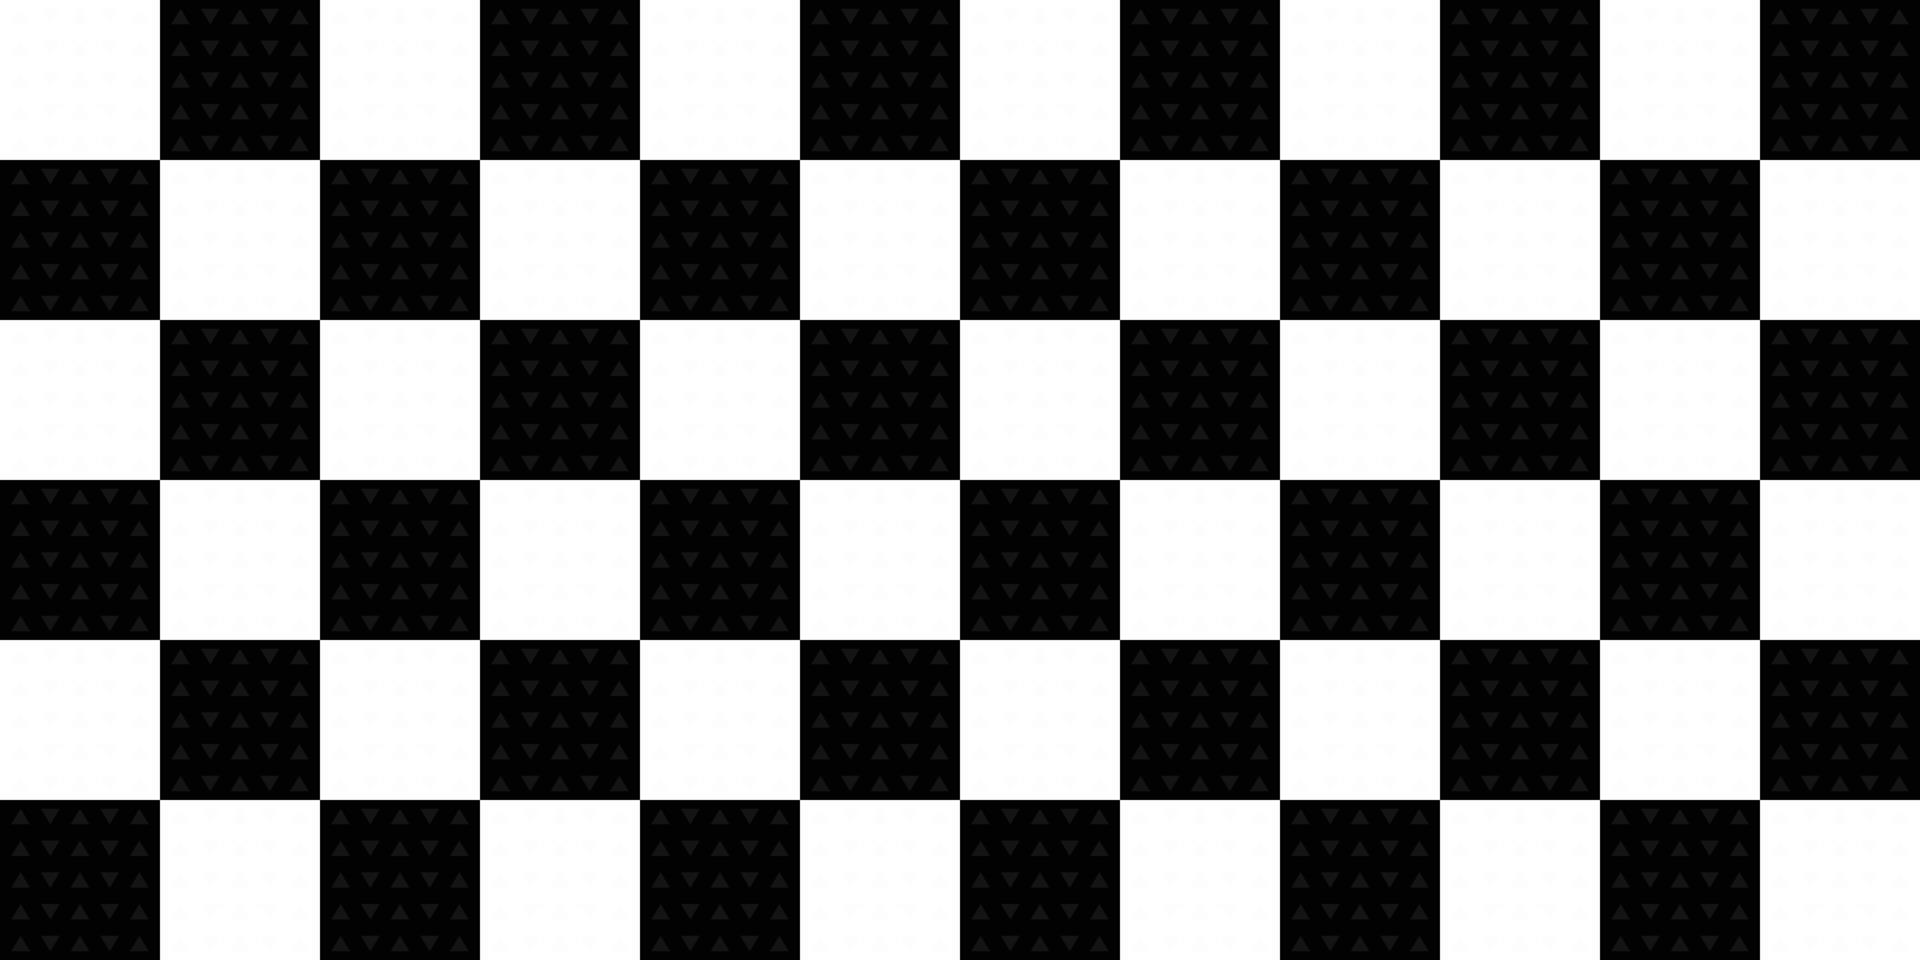 xadrez tecido têxtil pano toalha de mesa tartan xadrez azul cor abstrato  textura papel de parede padrão sem costura ilustração vetorial 08192021  6749764 Vetor no Vecteezy